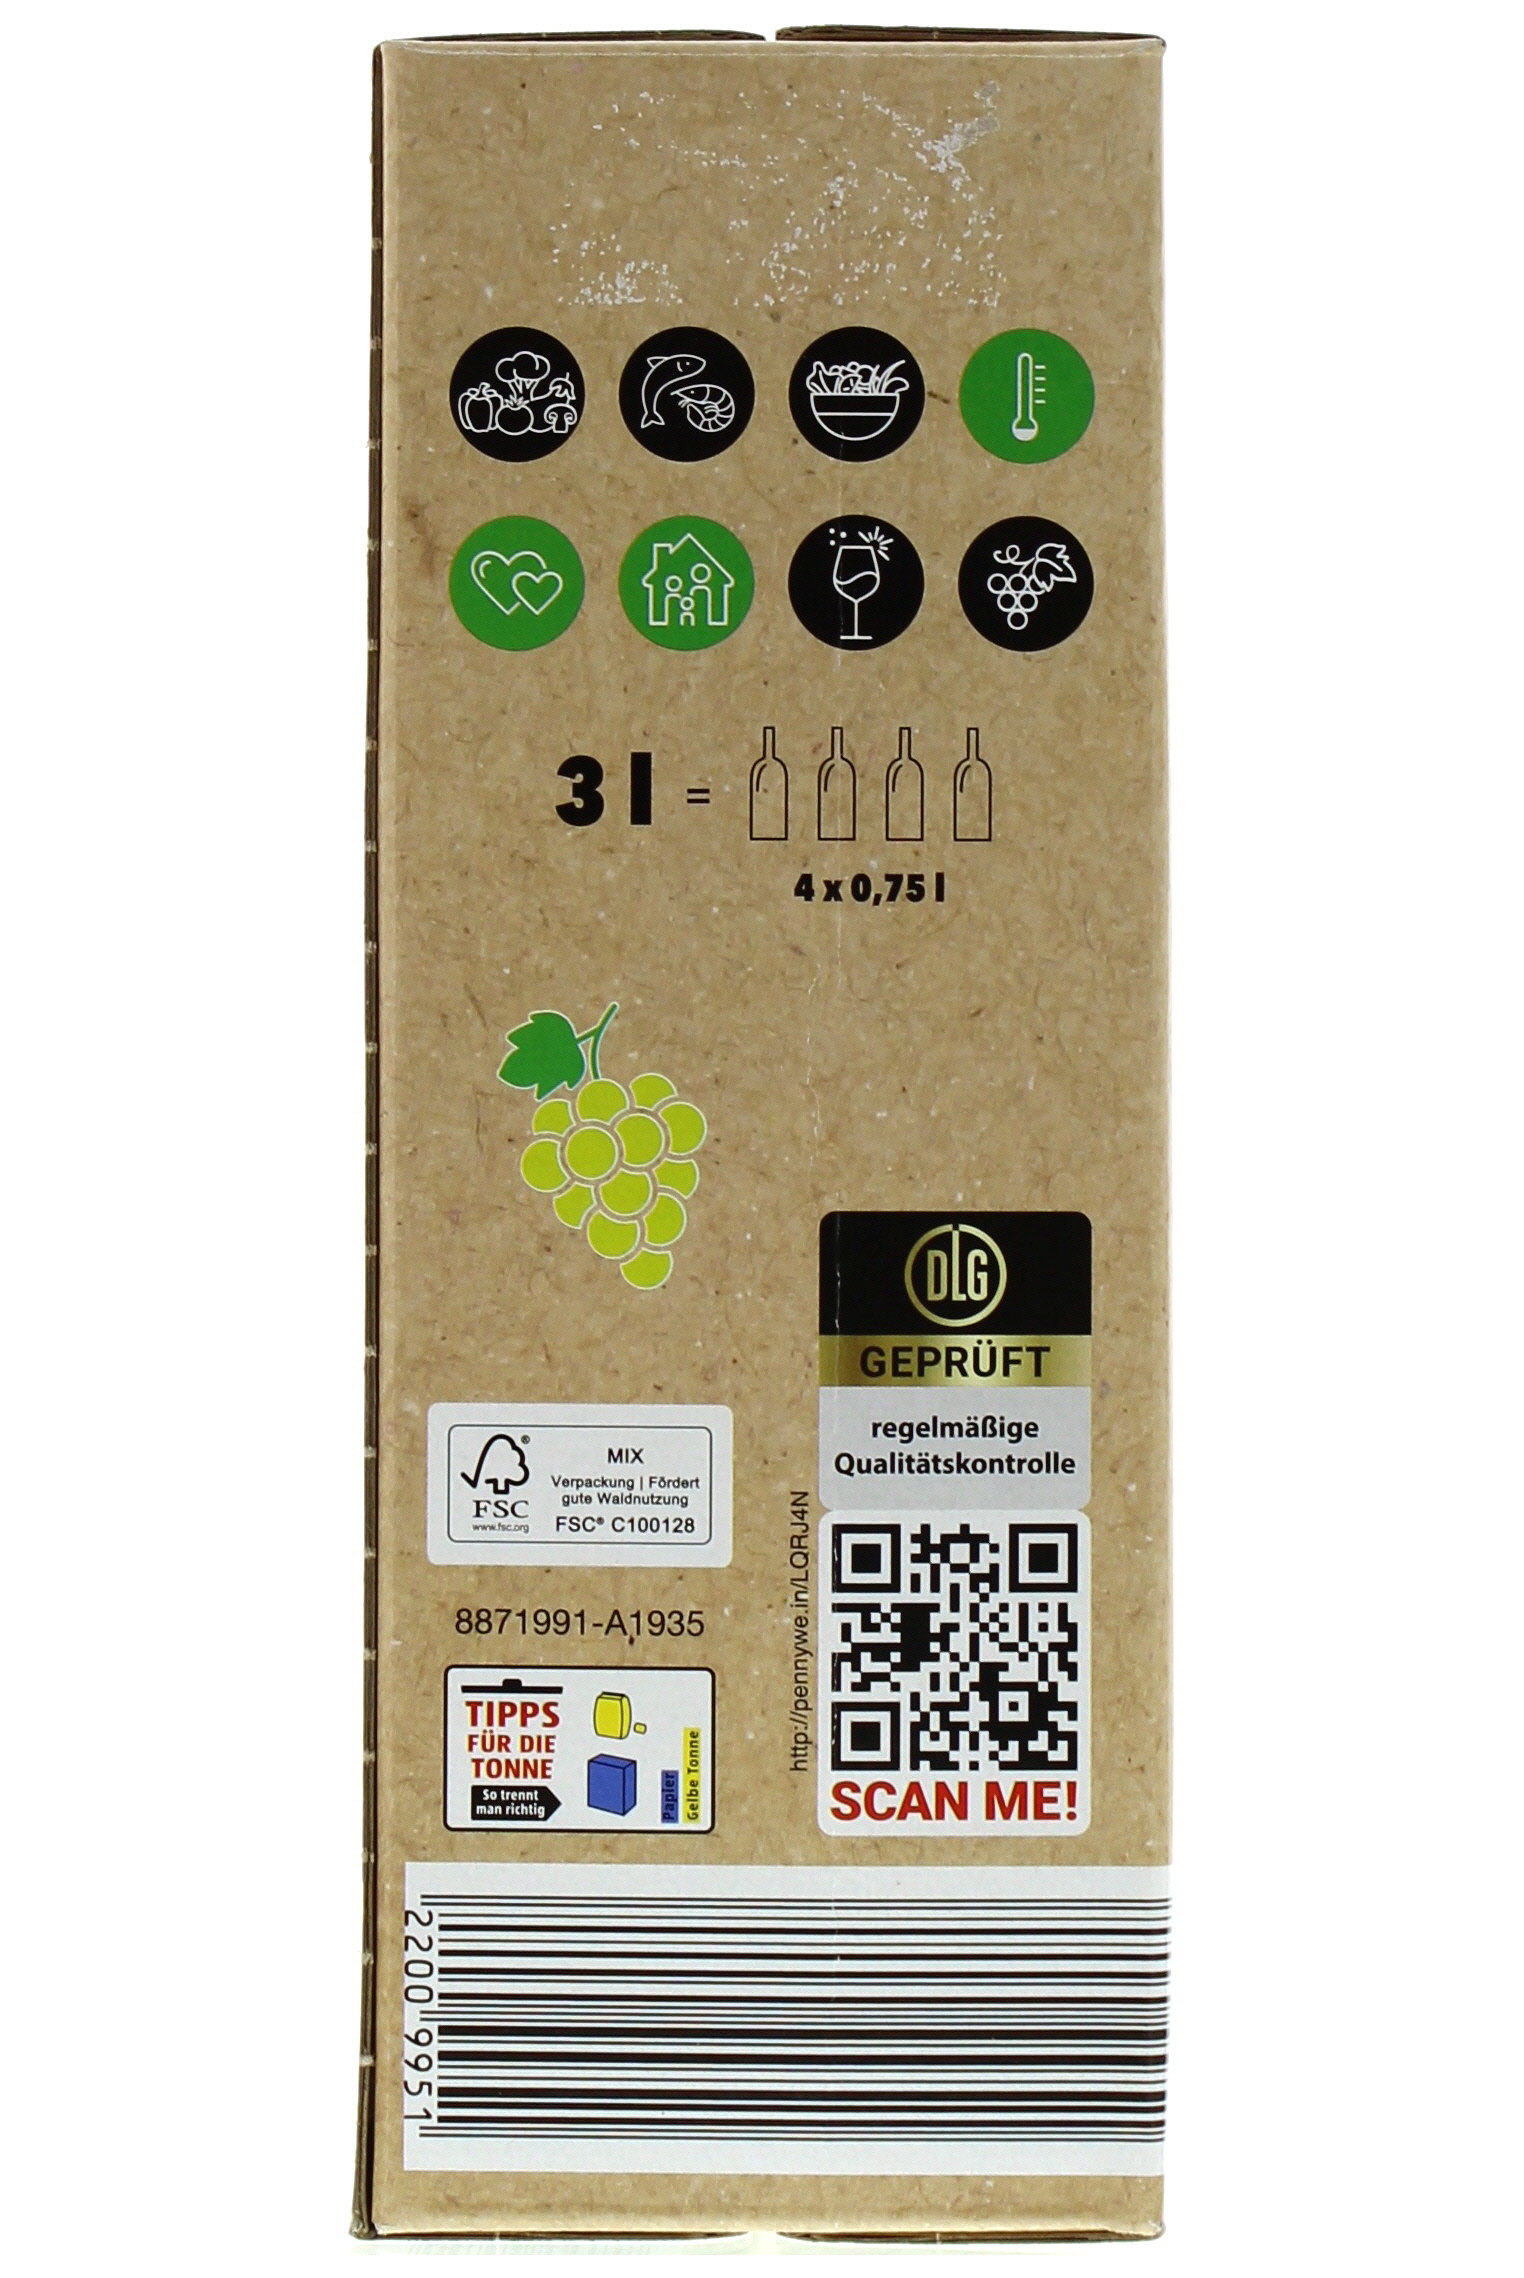 Sauvignon 3,0 Bag-in-Box Macabeo Blanc Mobile PENNY - l Vino Wein-App trocken 2022 de Spanien España